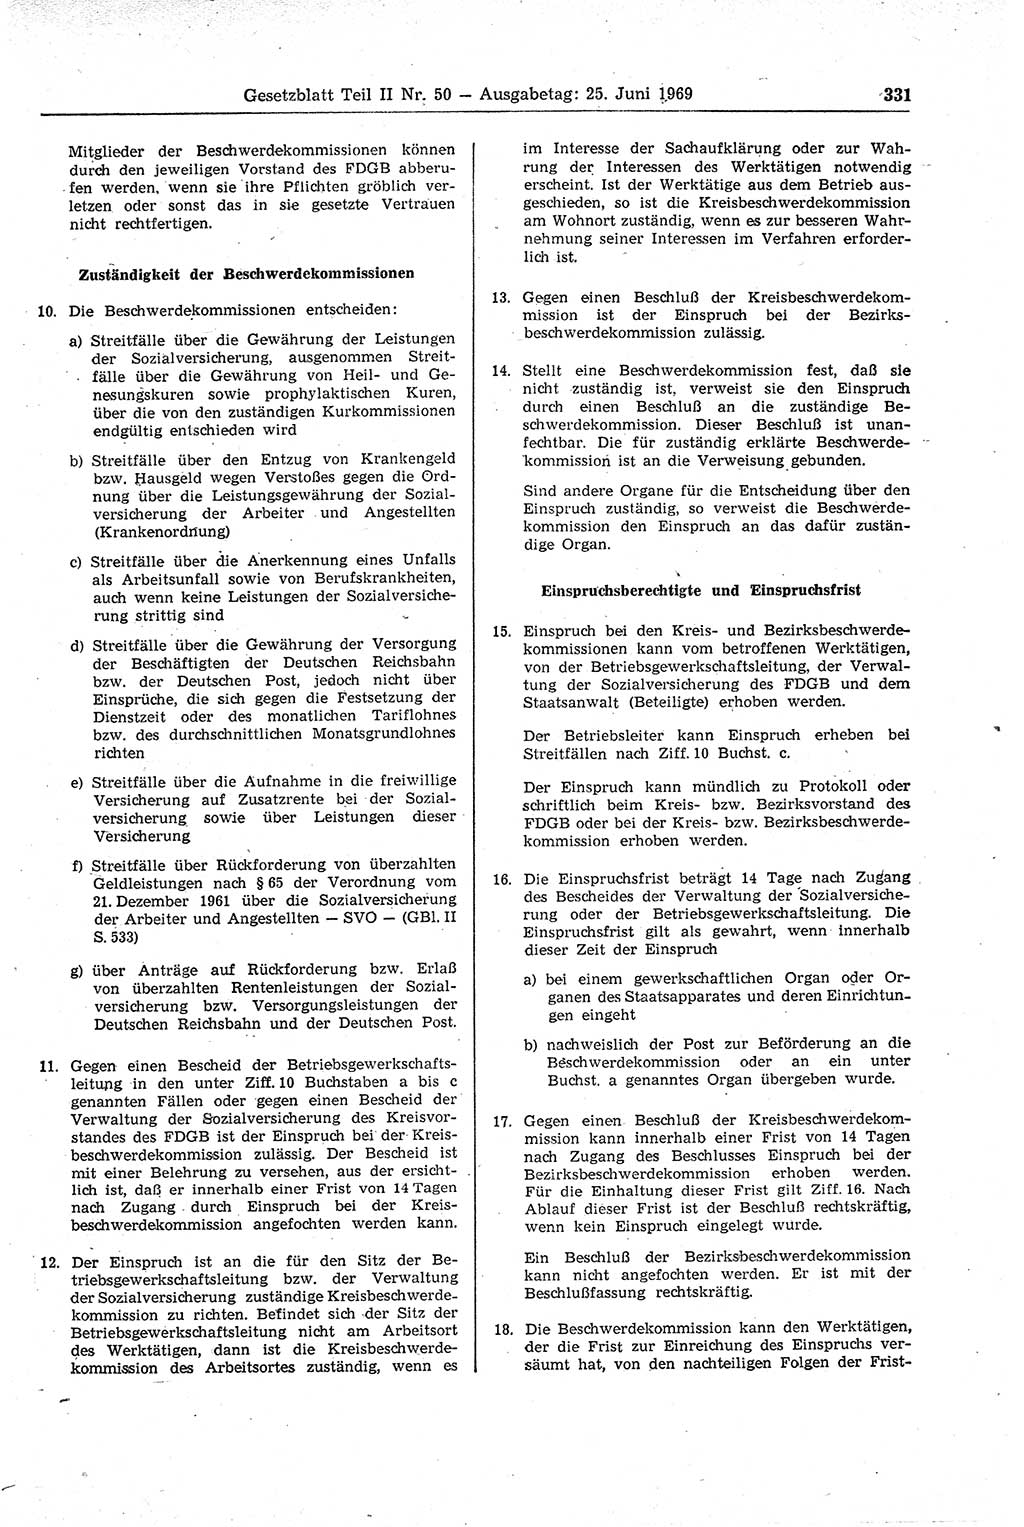 Gesetzblatt (GBl.) der Deutschen Demokratischen Republik (DDR) Teil ⅠⅠ 1969, Seite 331 (GBl. DDR ⅠⅠ 1969, S. 331)